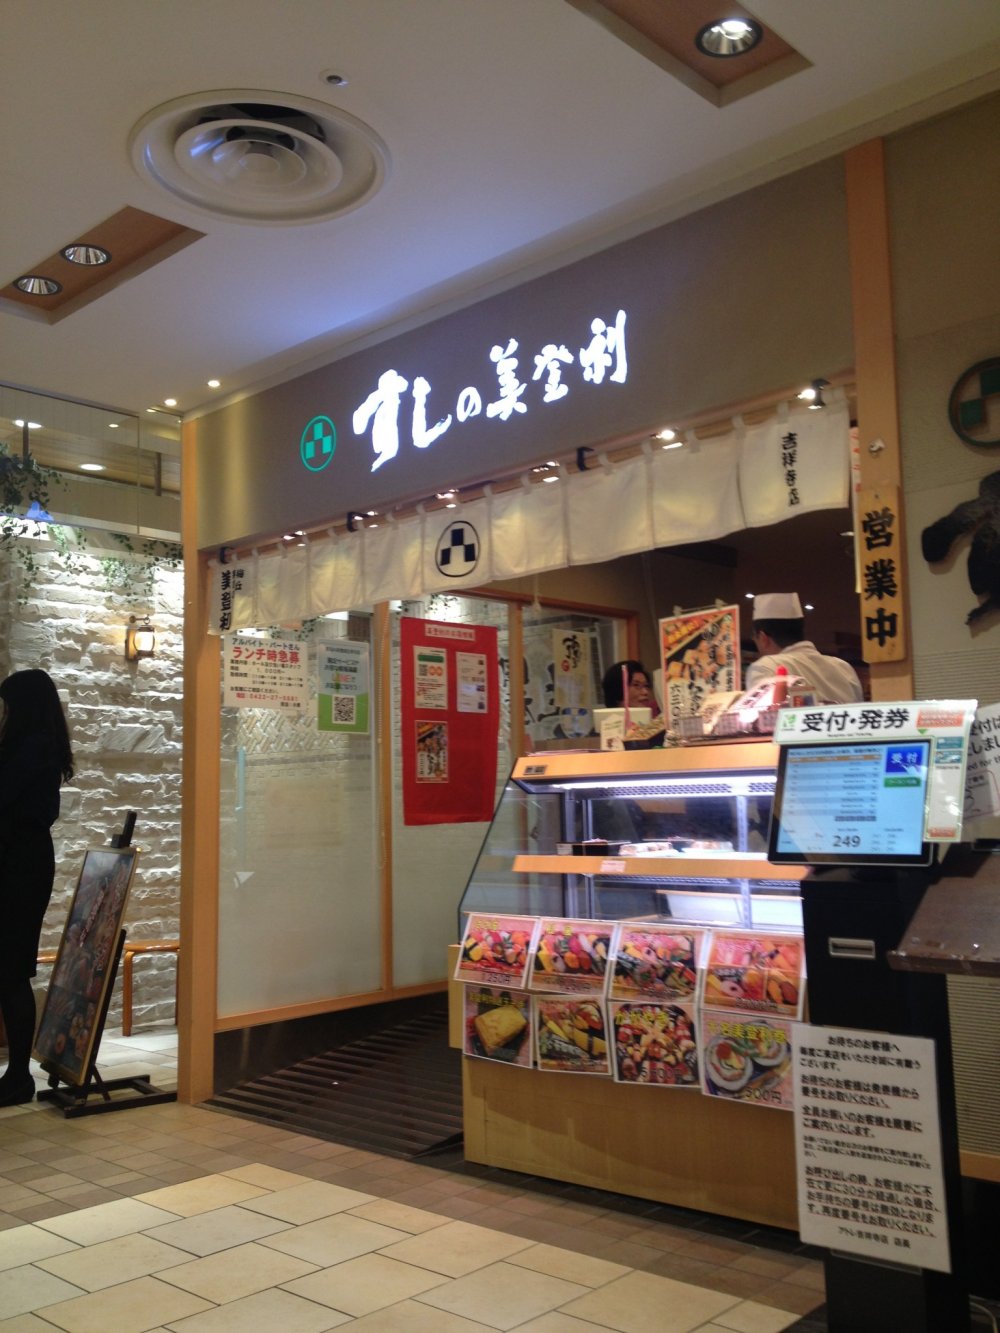 Entrance to Midori no Sushi Kichijoji
